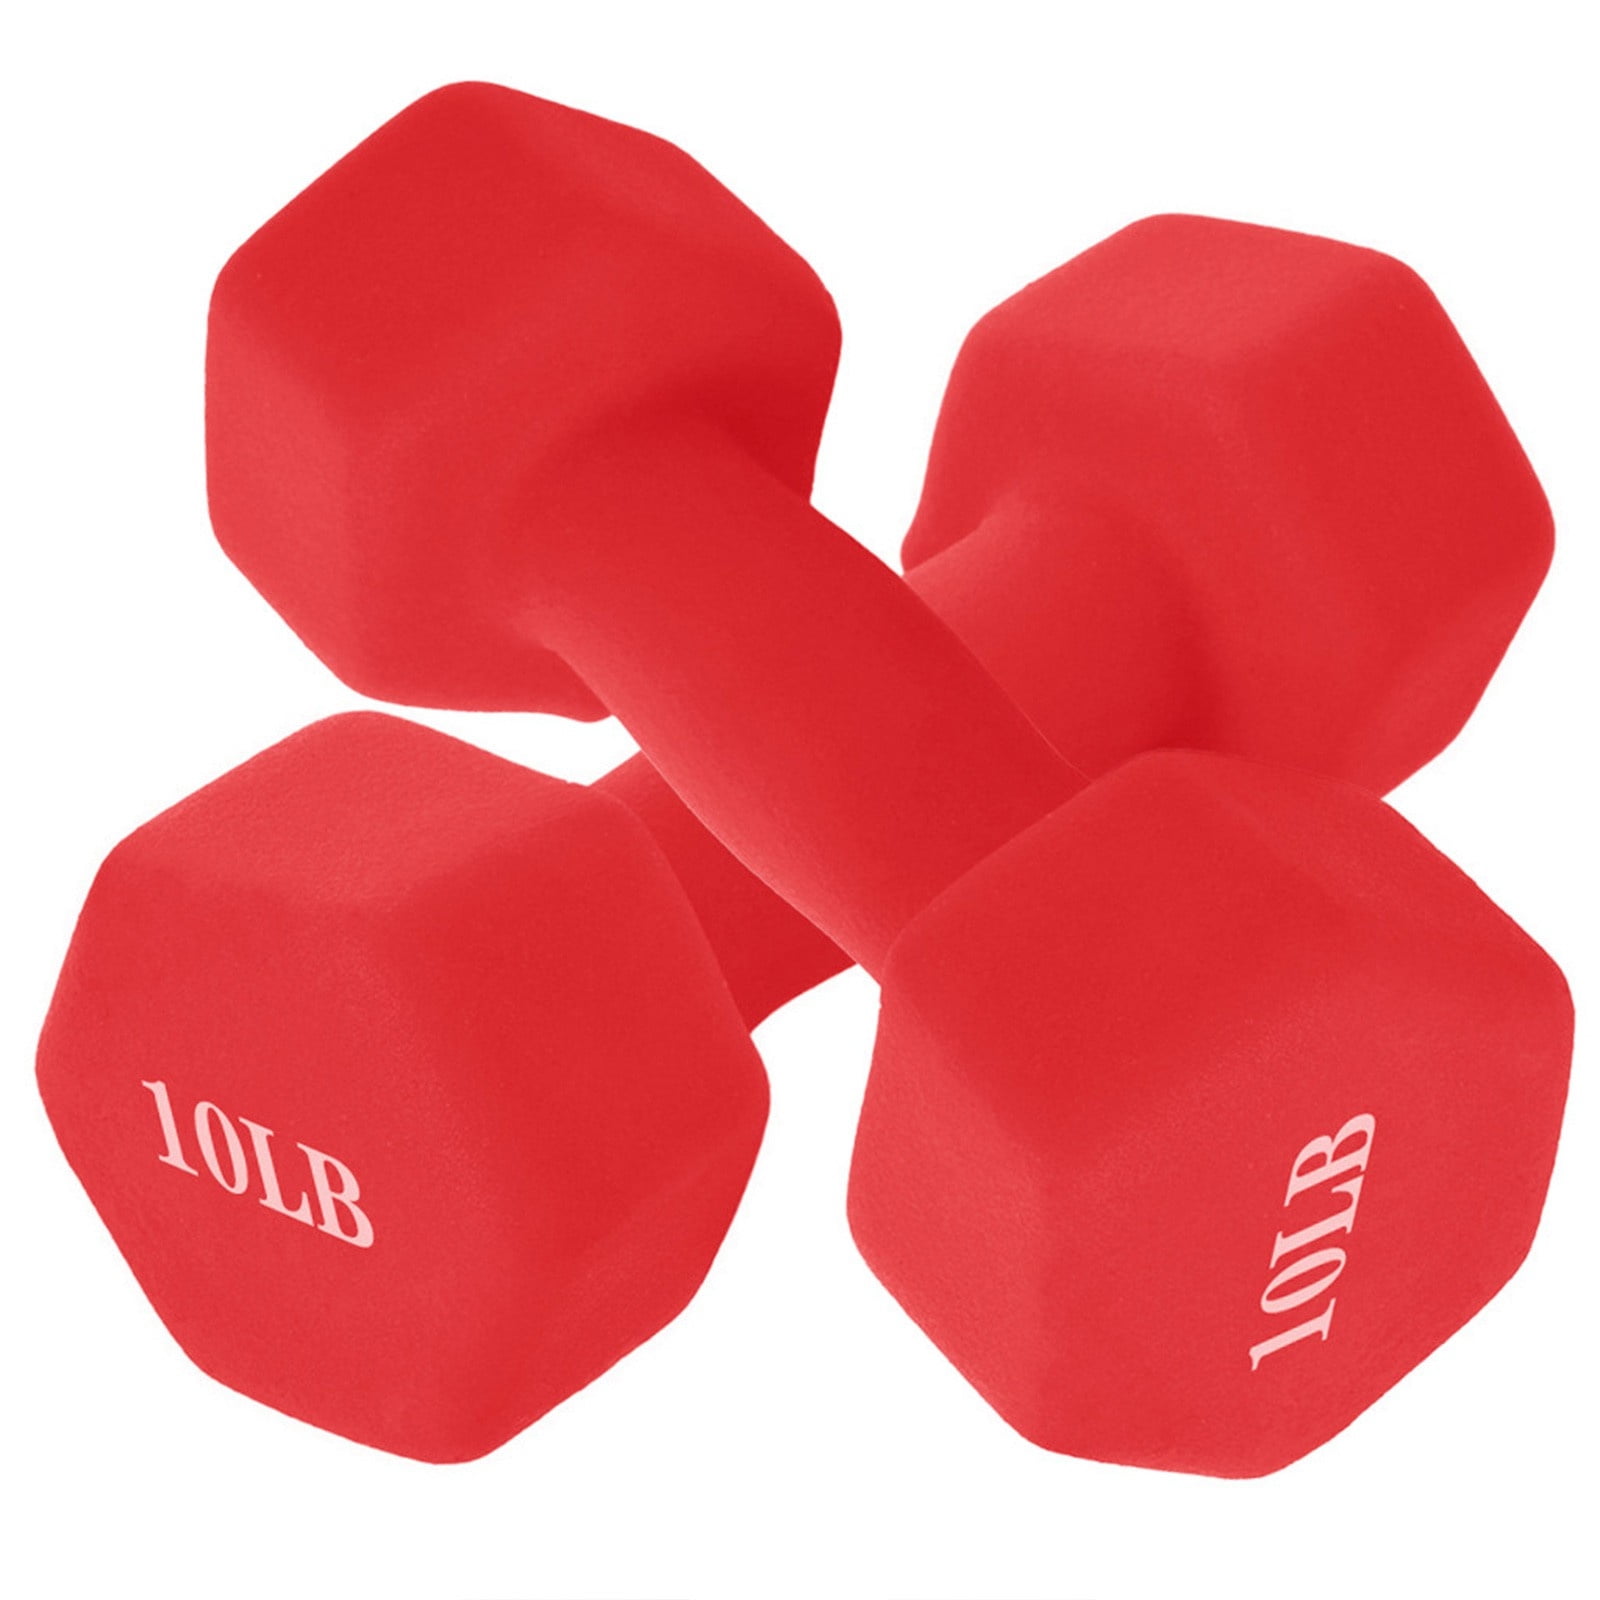 20 kg - Black 44 lbs Details about   ALEKO Adjustable Dumbbell Set for Home Gym 